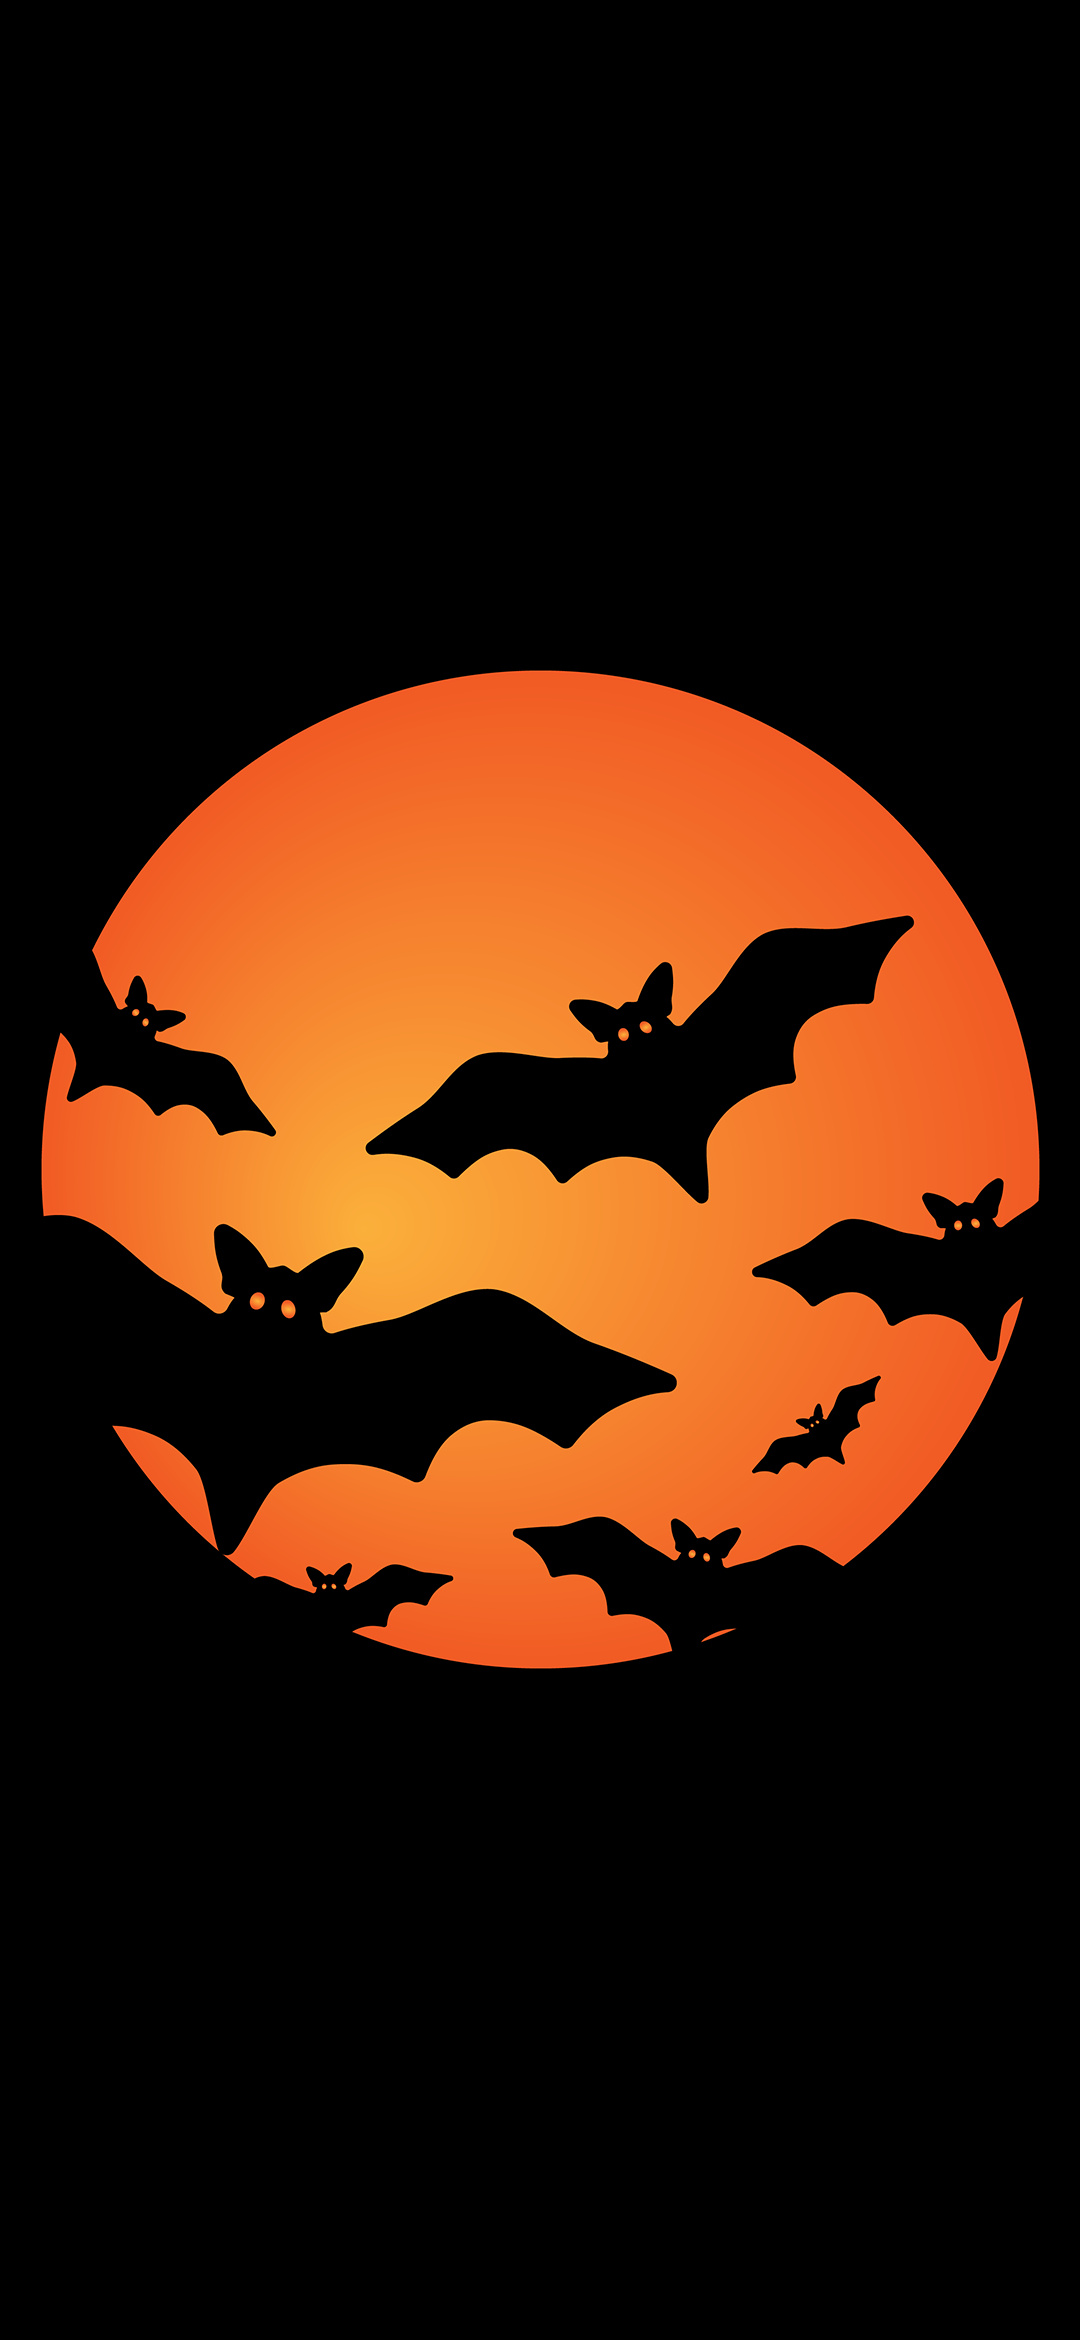 Orange bats festival, Bat graphics, Free image download, Vibrant wallpaper, 1080x2340 HD Handy